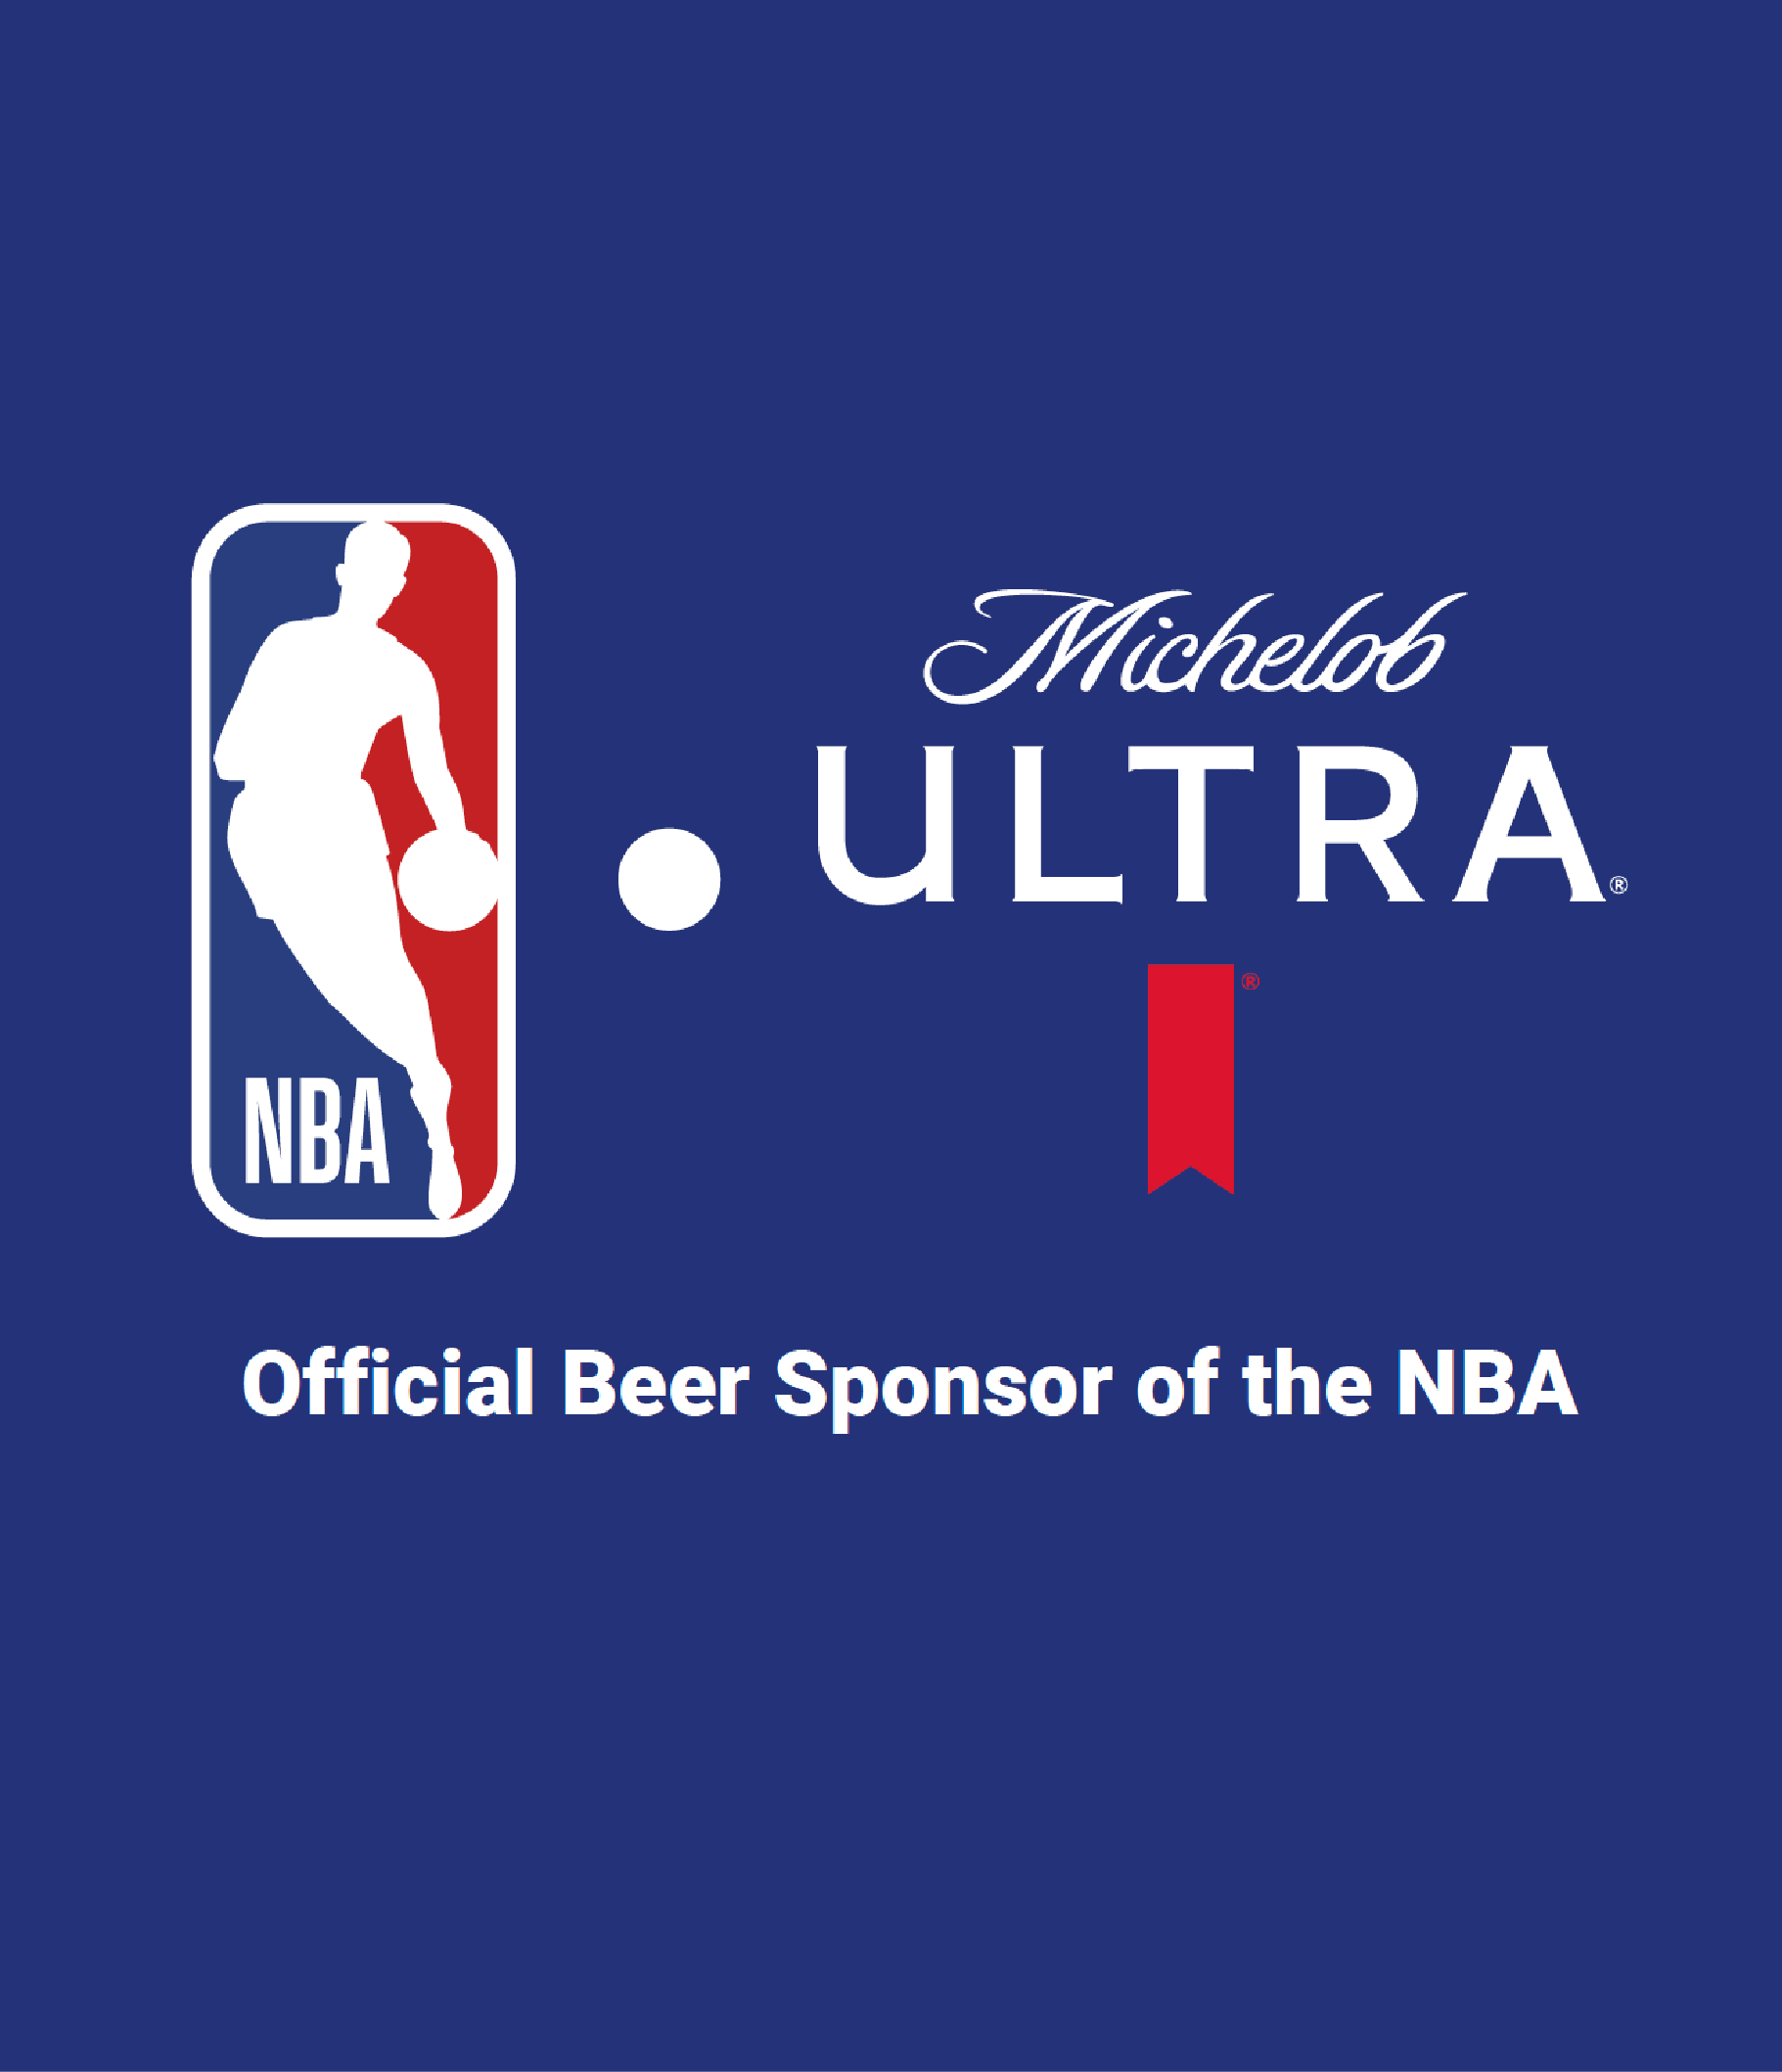 Michelob ULTRA named first-ever global beer partner for the National Basketball Association AB InBev